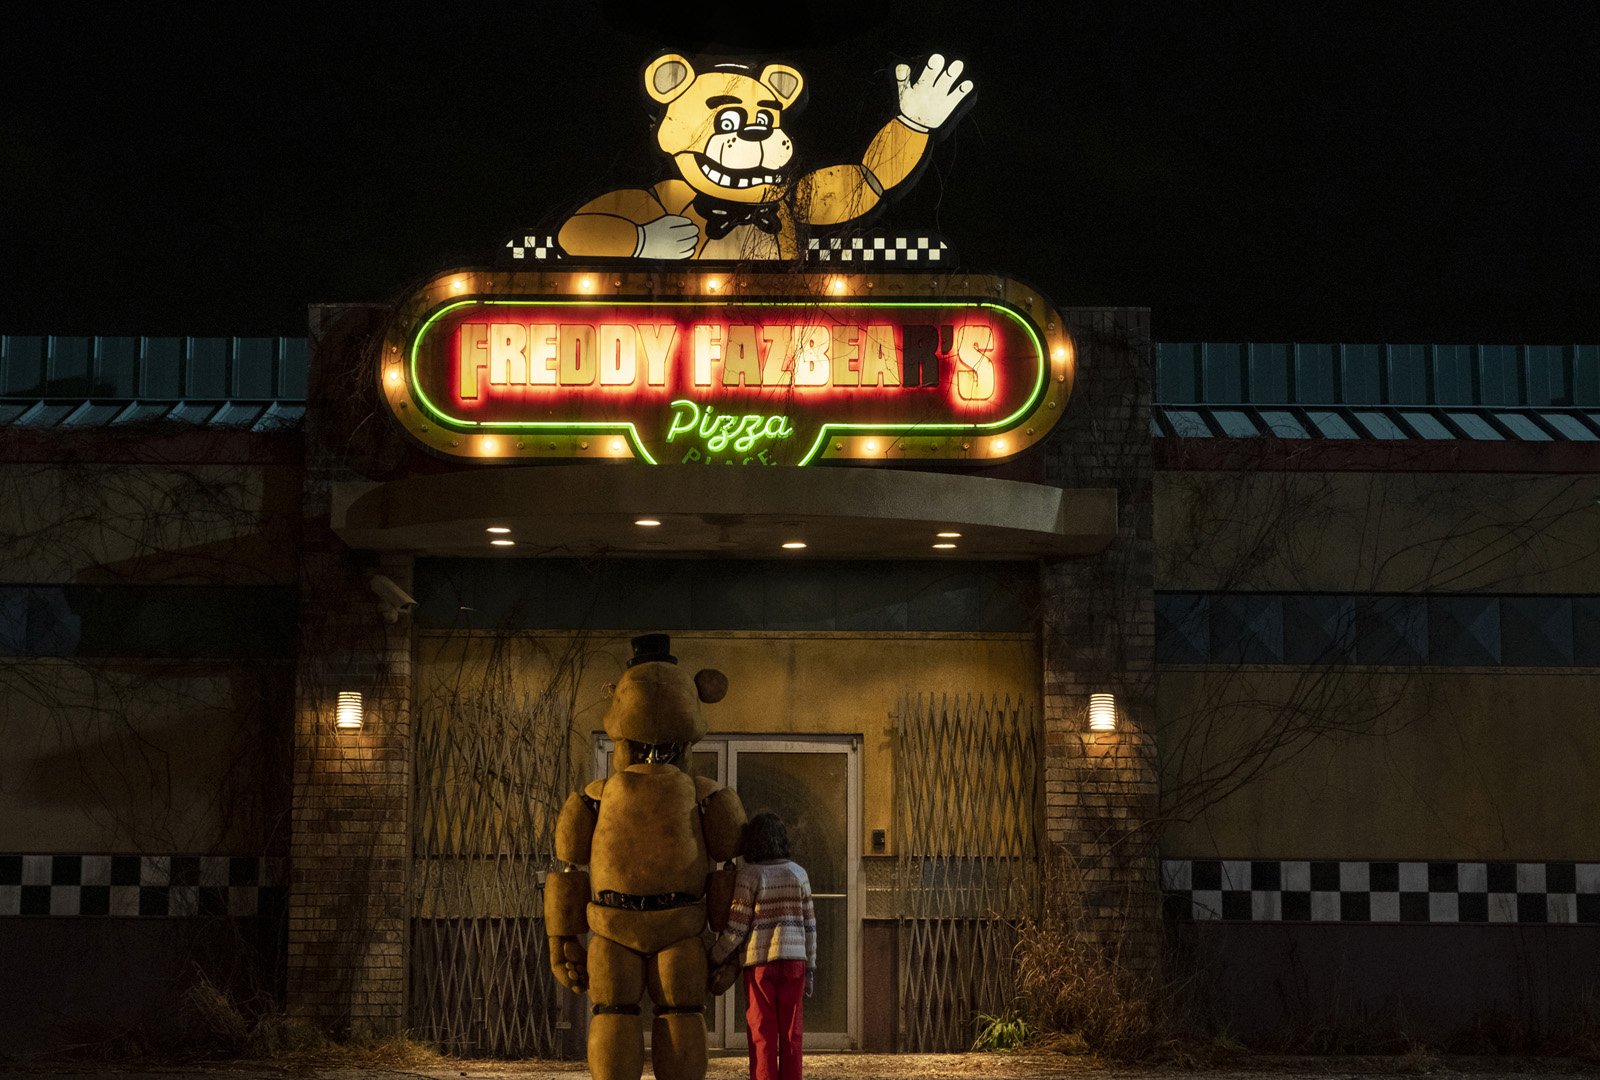 Pôster do filme Five Nights At Freddy's - O Pesadelo Sem Fim - Foto 19 de  19 - AdoroCinema